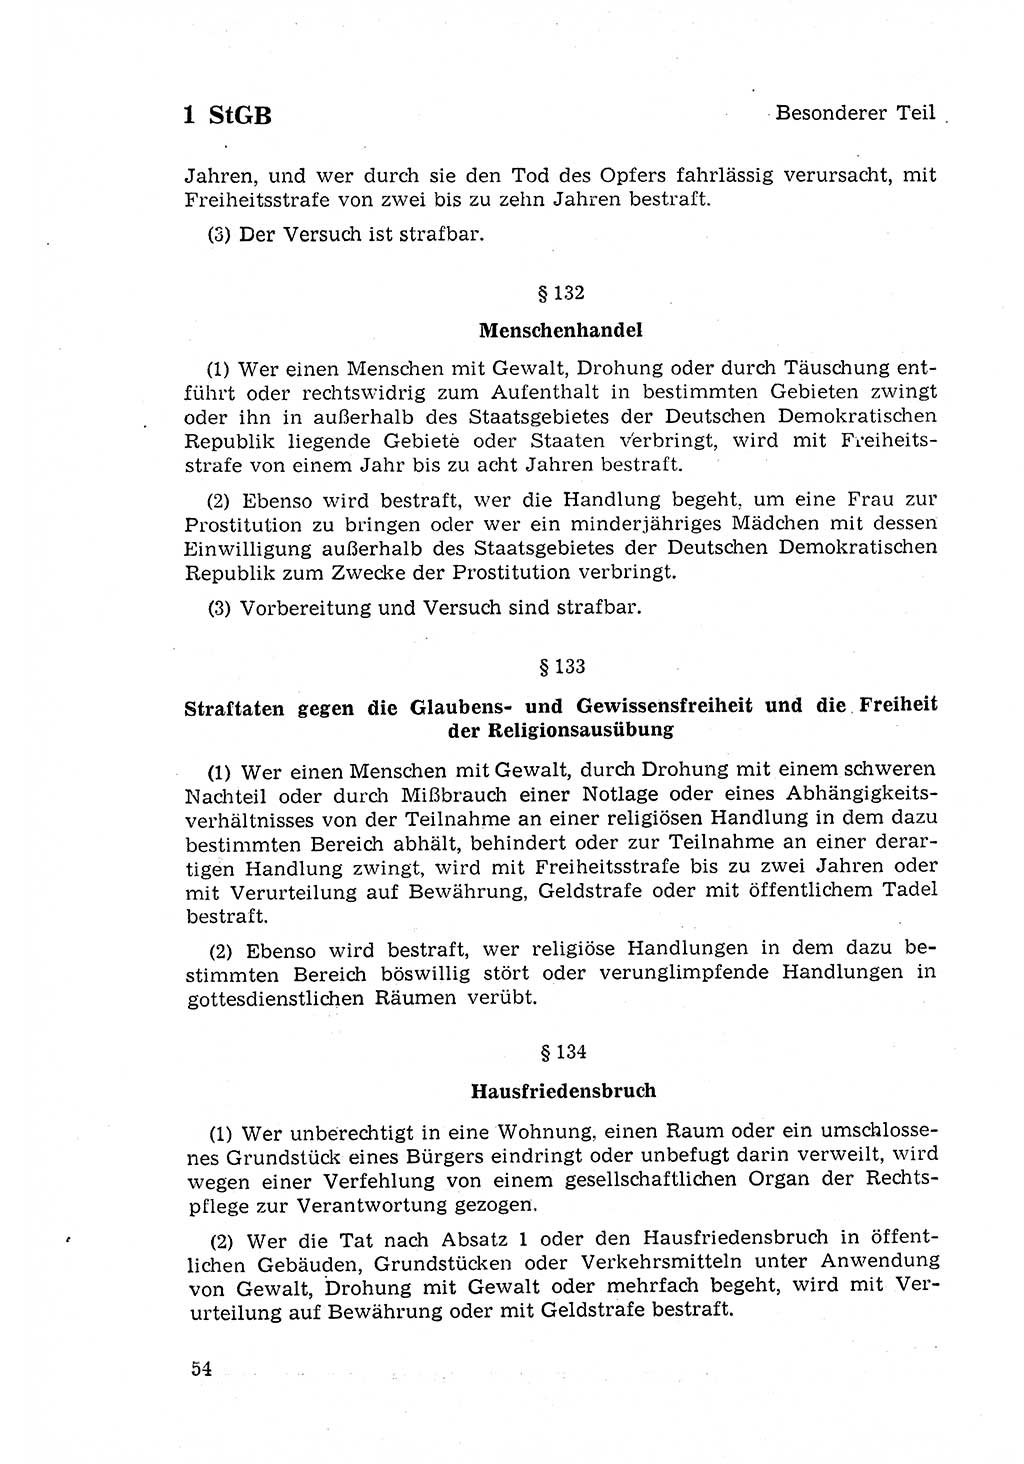 Strafgesetzbuch (StGB) der Deutschen Demokratischen Republik (DDR) 1968, Seite 54 (StGB DDR 1968, S. 54)